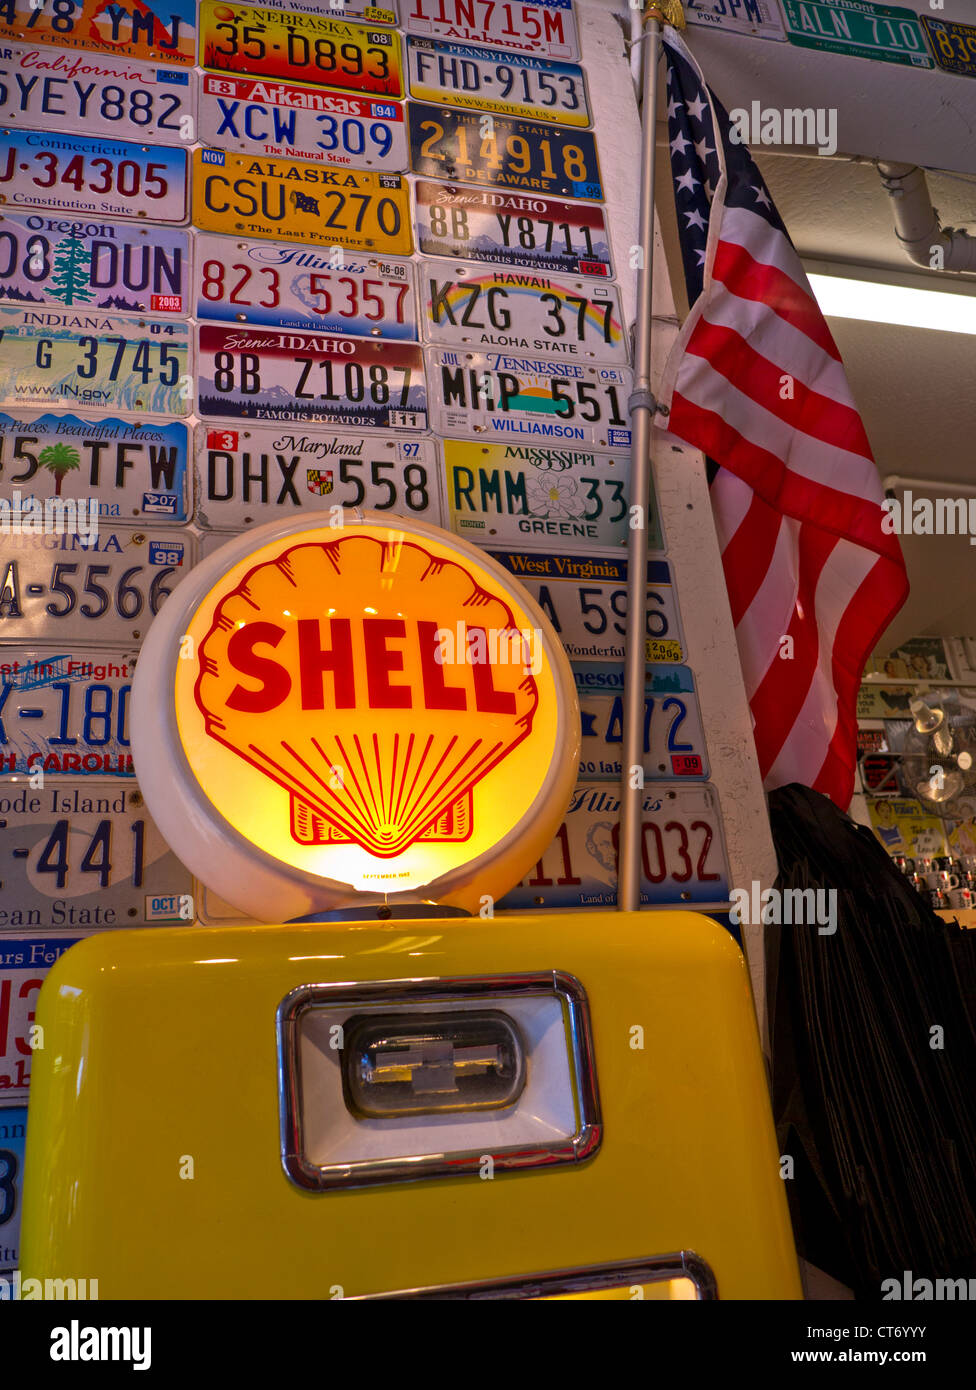 Shell Tankstelle und US Auto Platten bilden auffällige Anzeige am Eingang zum Auto Zubehör Shop Pier 39 San Francisco USA Stockfoto